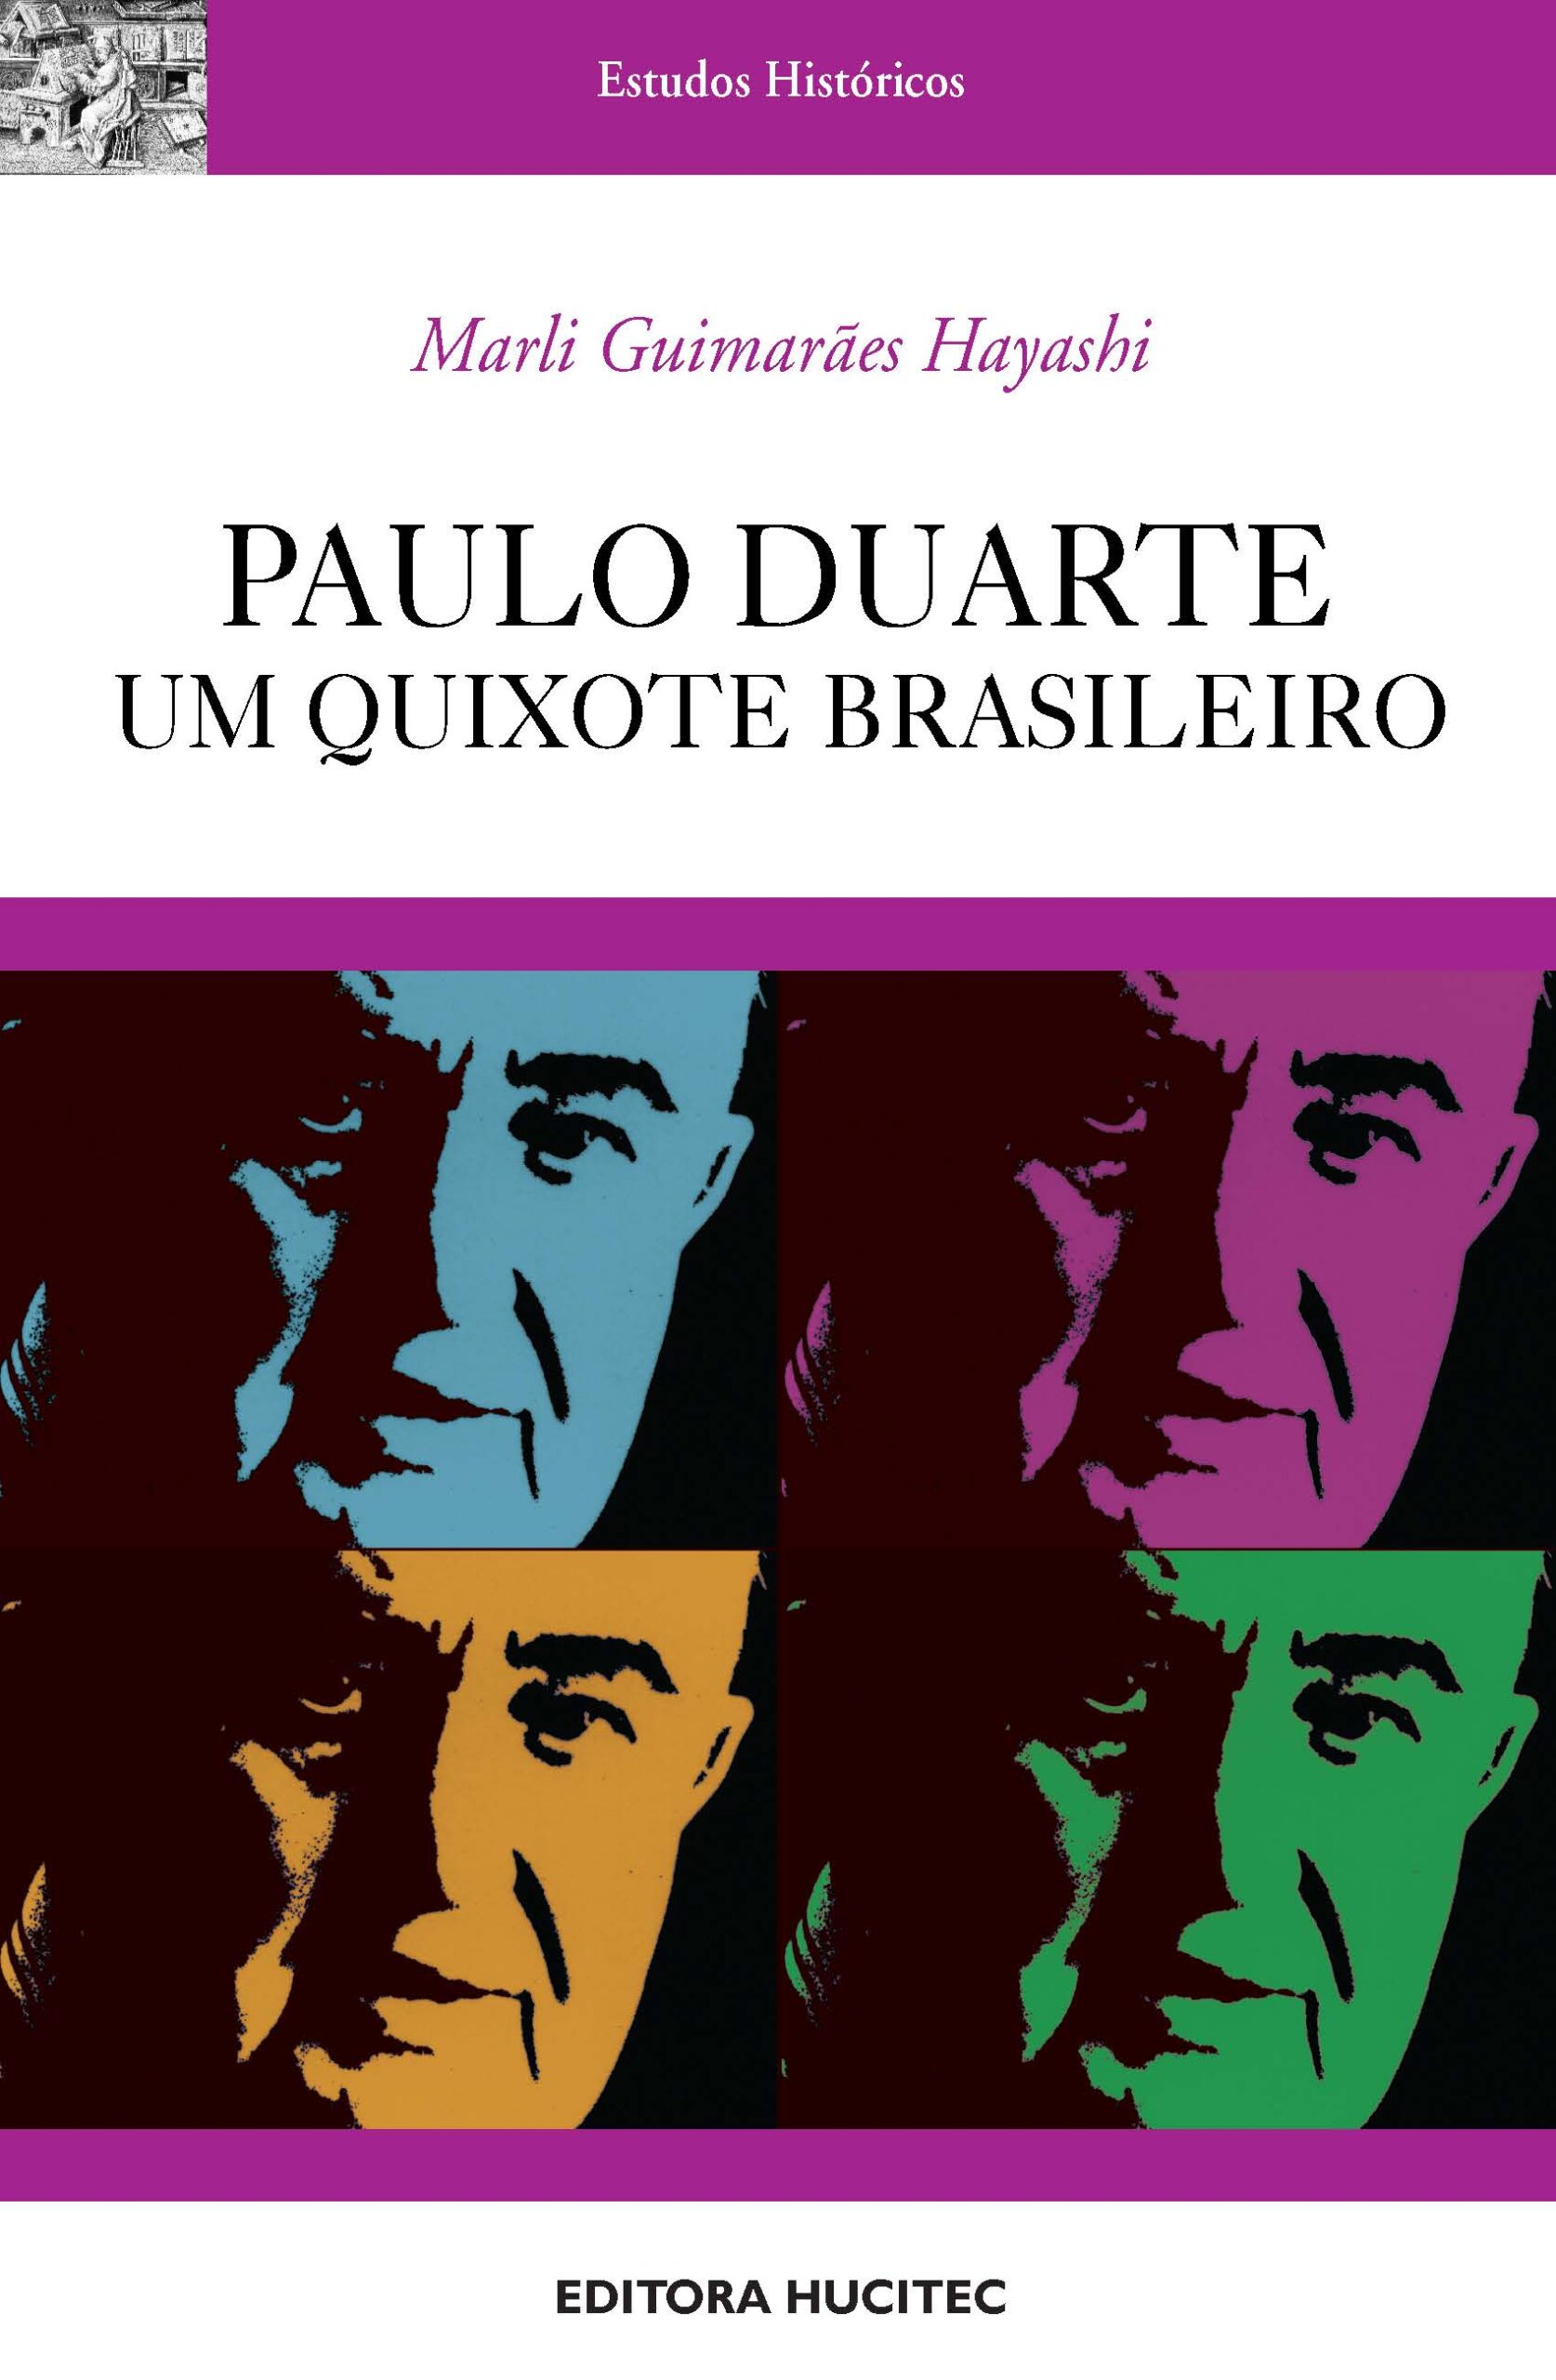 Hayashi, Marli Guimarães (Autor)  |  Paulo Duarte, um Quixote brasileiro